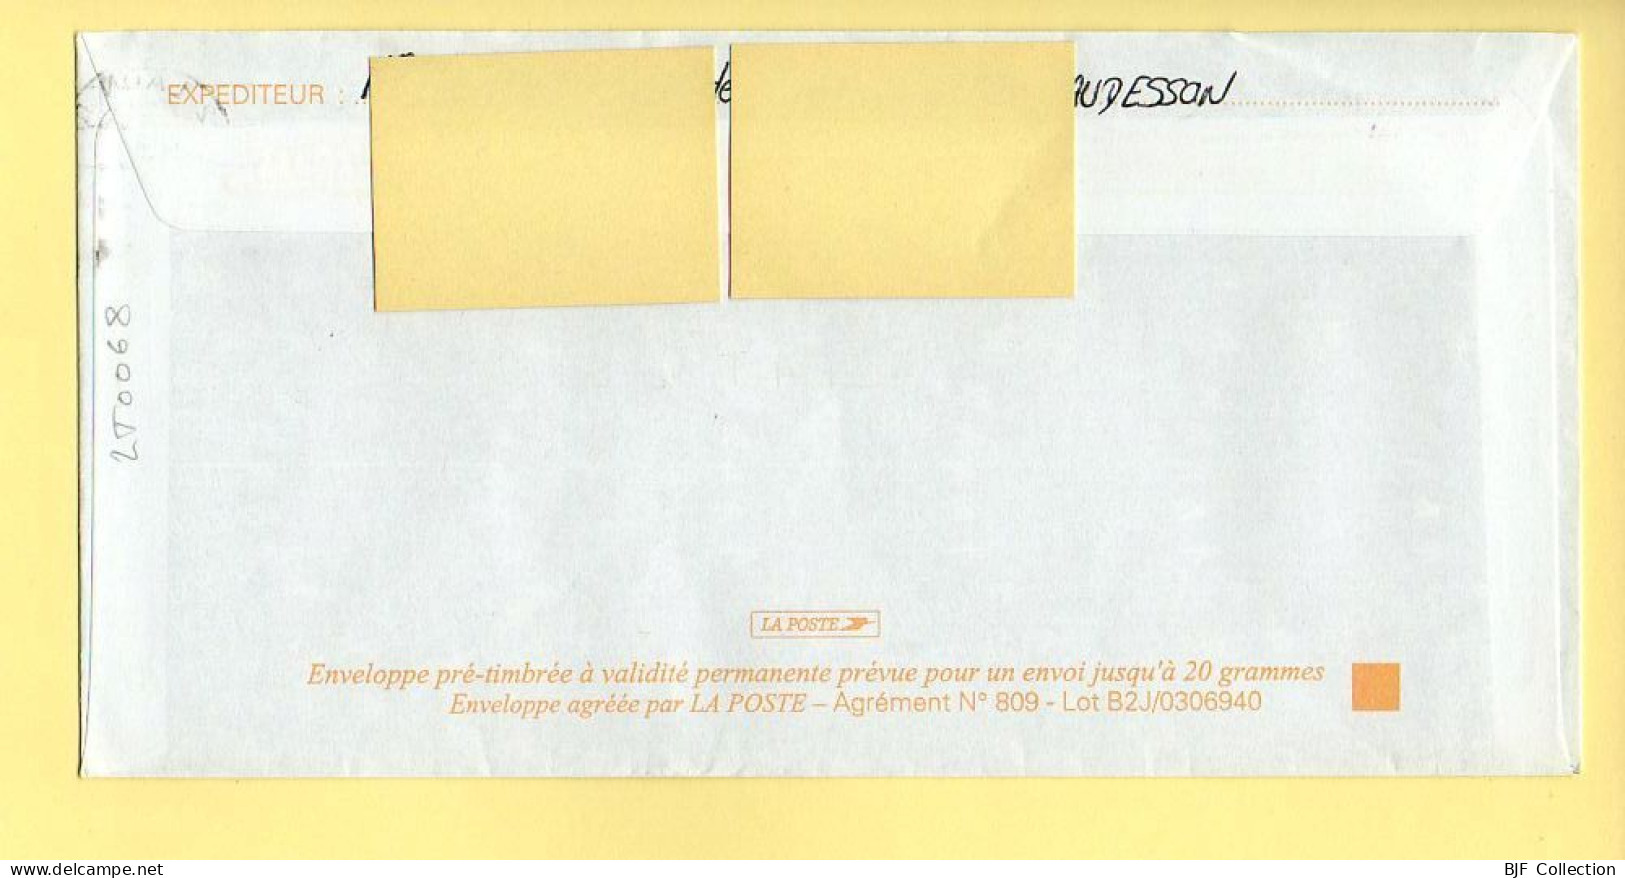 PAP Marianne De Luquet – URCEL (02) - FETE DU BOIS (N° 809 – Lot B2J/0306940) – 21/09/2005 - Prêts-à-poster:Overprinting/Luquet